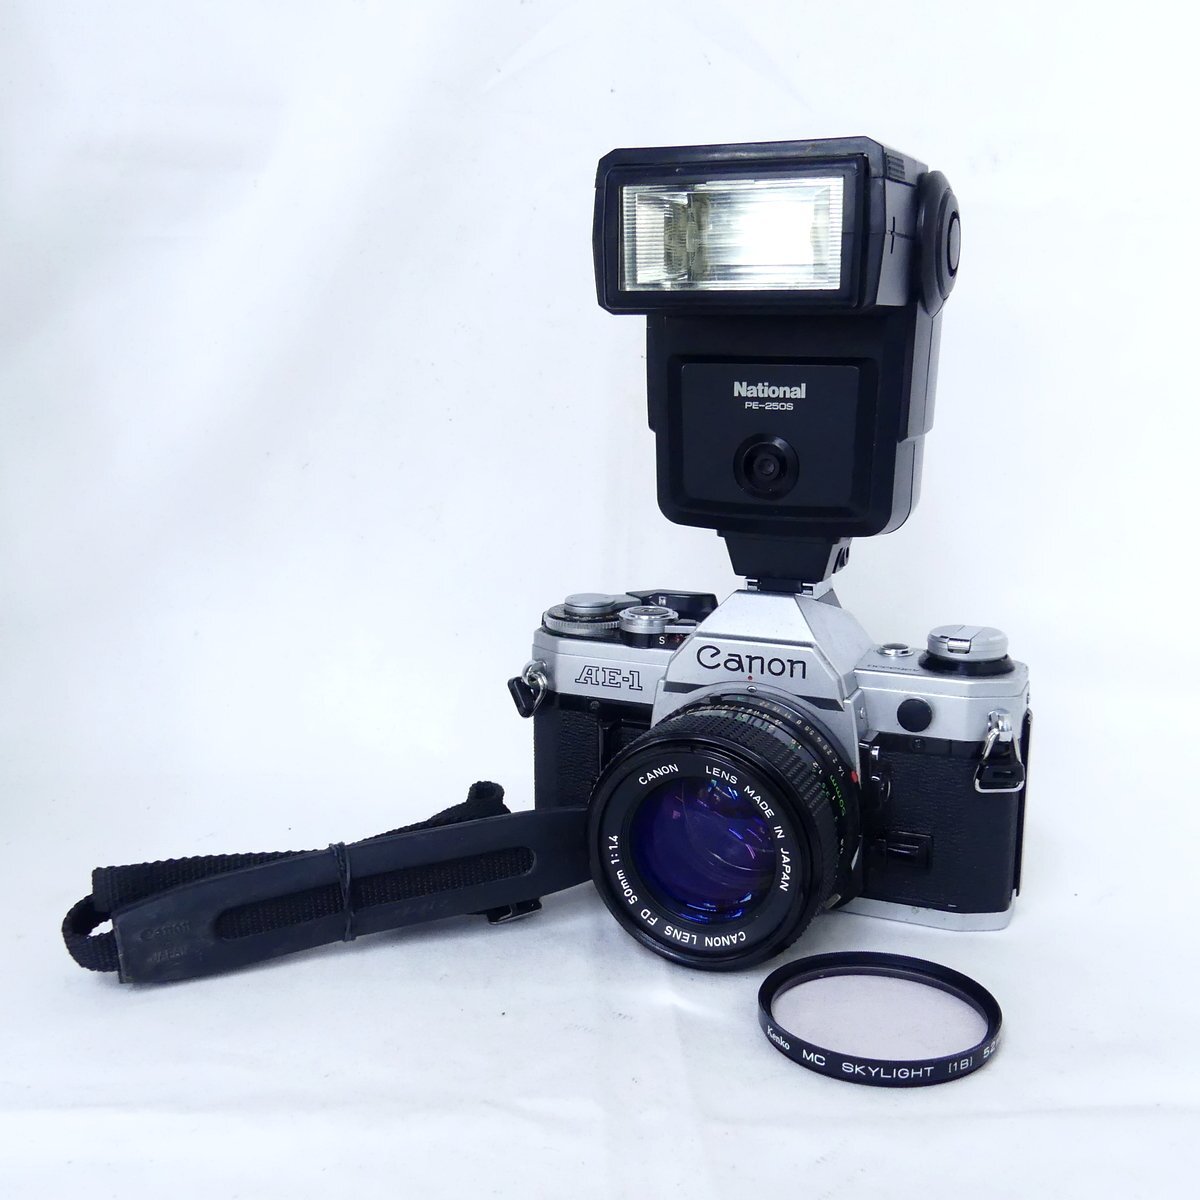 Canon キャノン AE-1 + FD 50mm F1.4 フィルムカメラ、National PE-250S ストロボ 現状品 USED /2404Cの画像1